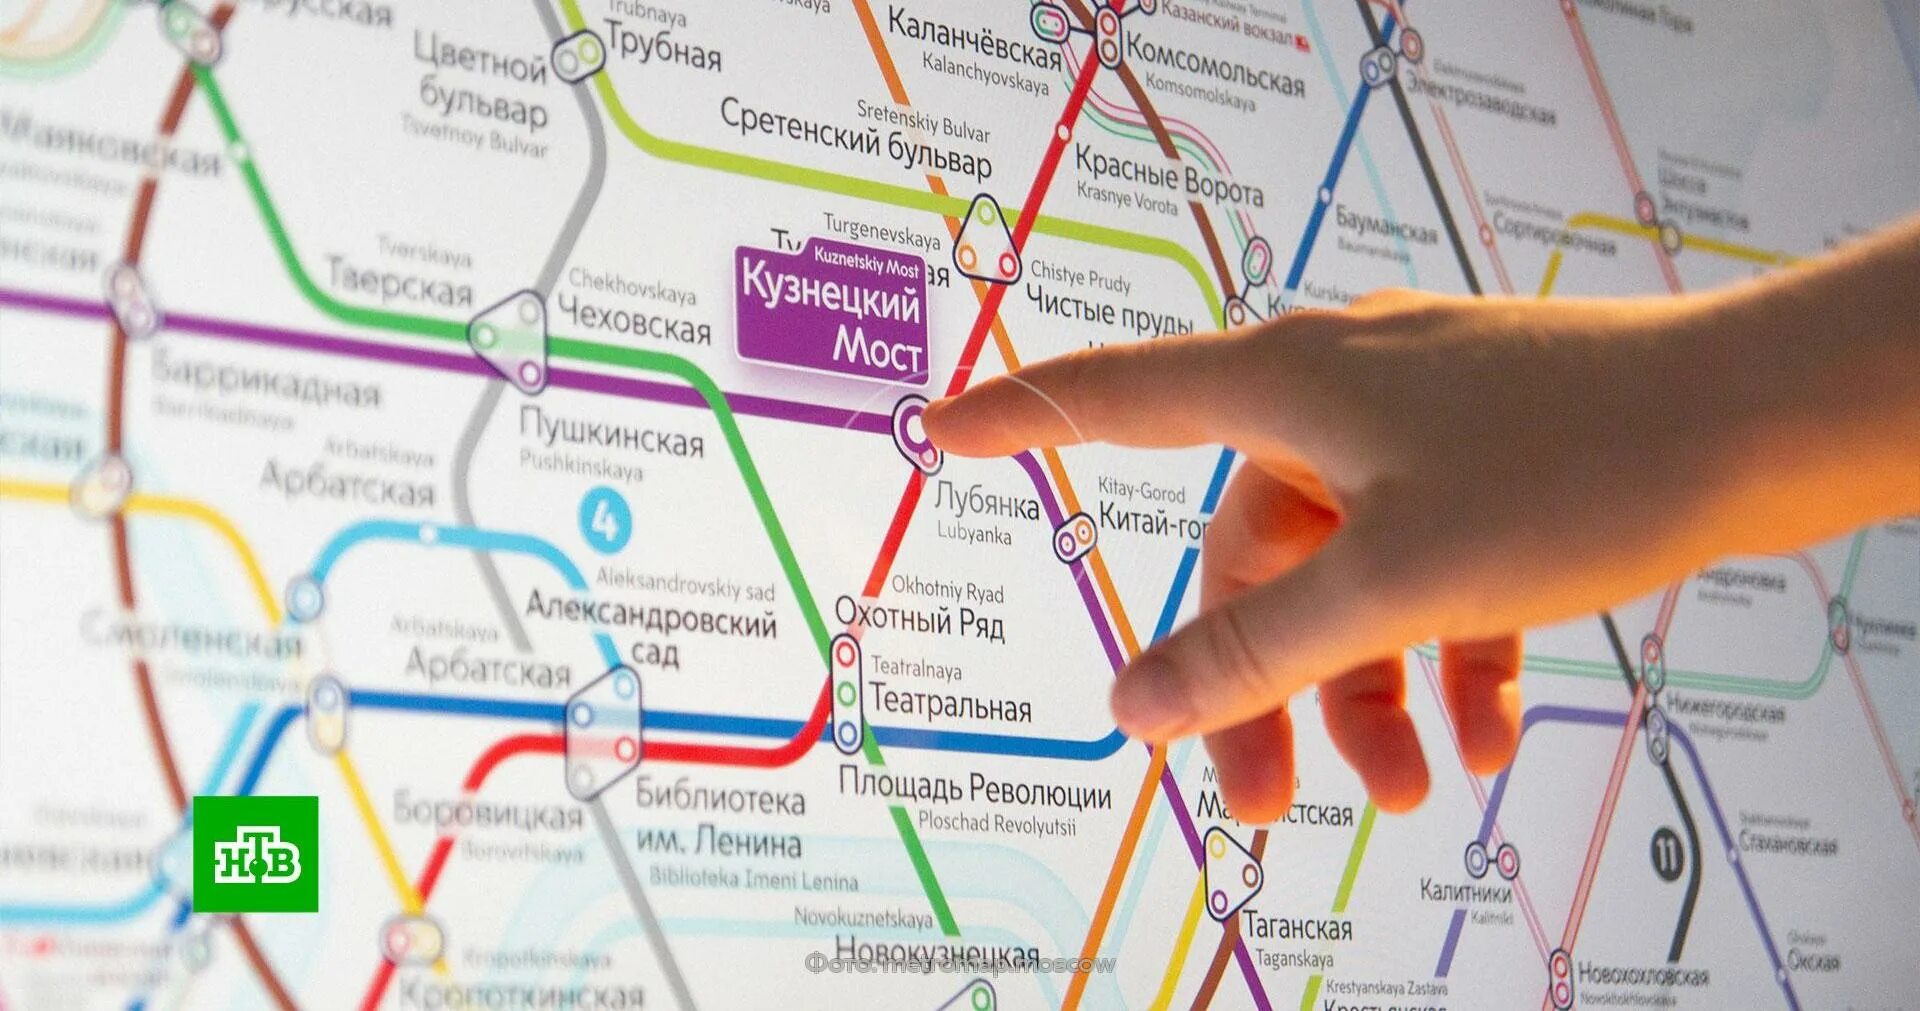 Можно новые пункт. Карта Московского метрополитена 2030. Новая схема Московского метрополитена 2030. Московский метрополитен в 2030 году.